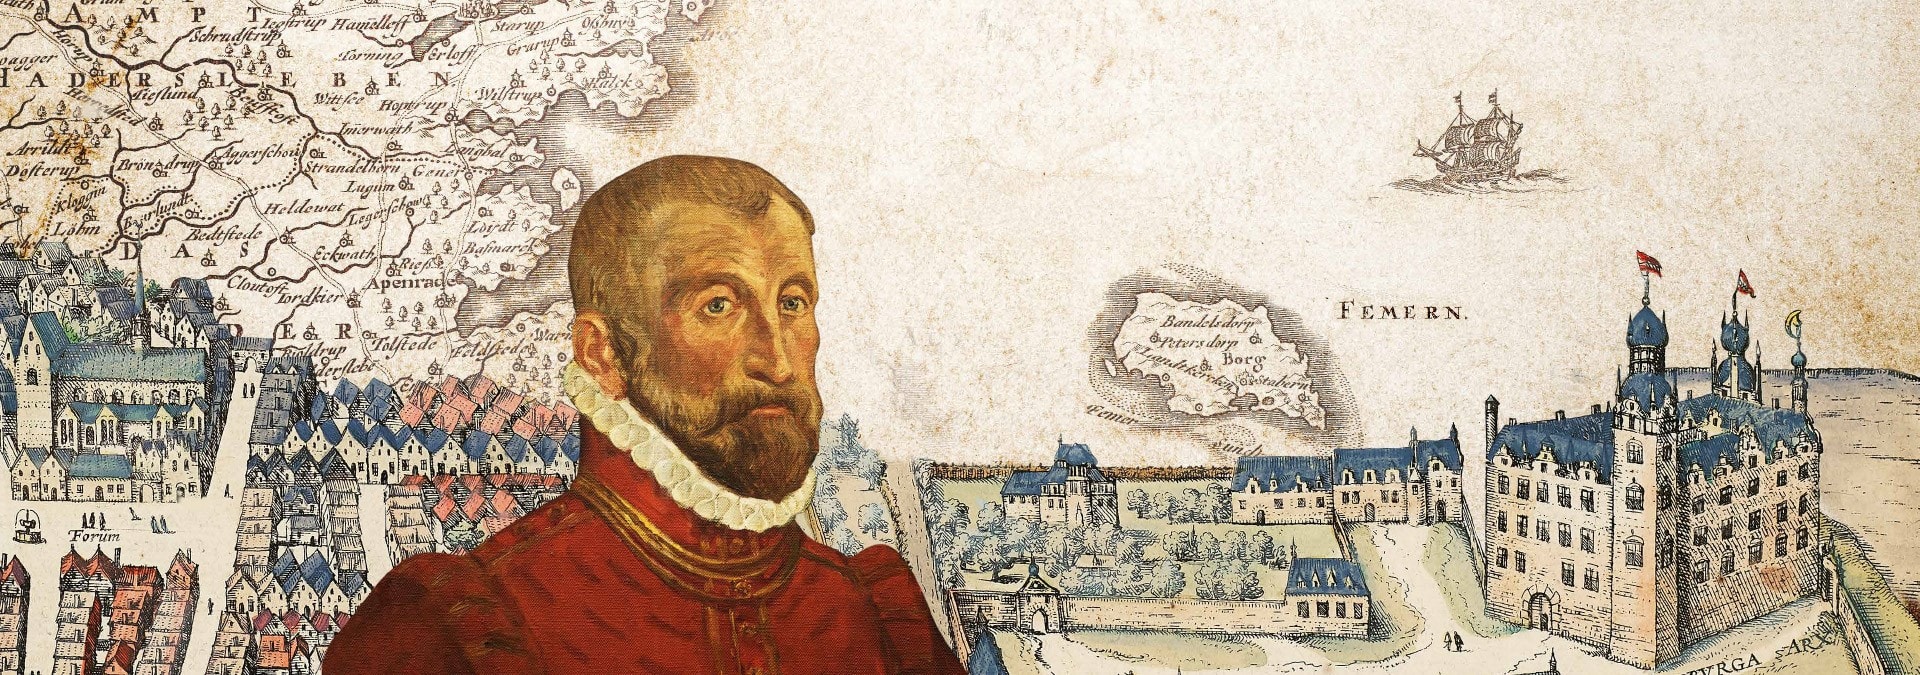 Det forsvundne hertugdømme: Hans den Ældre 500 år